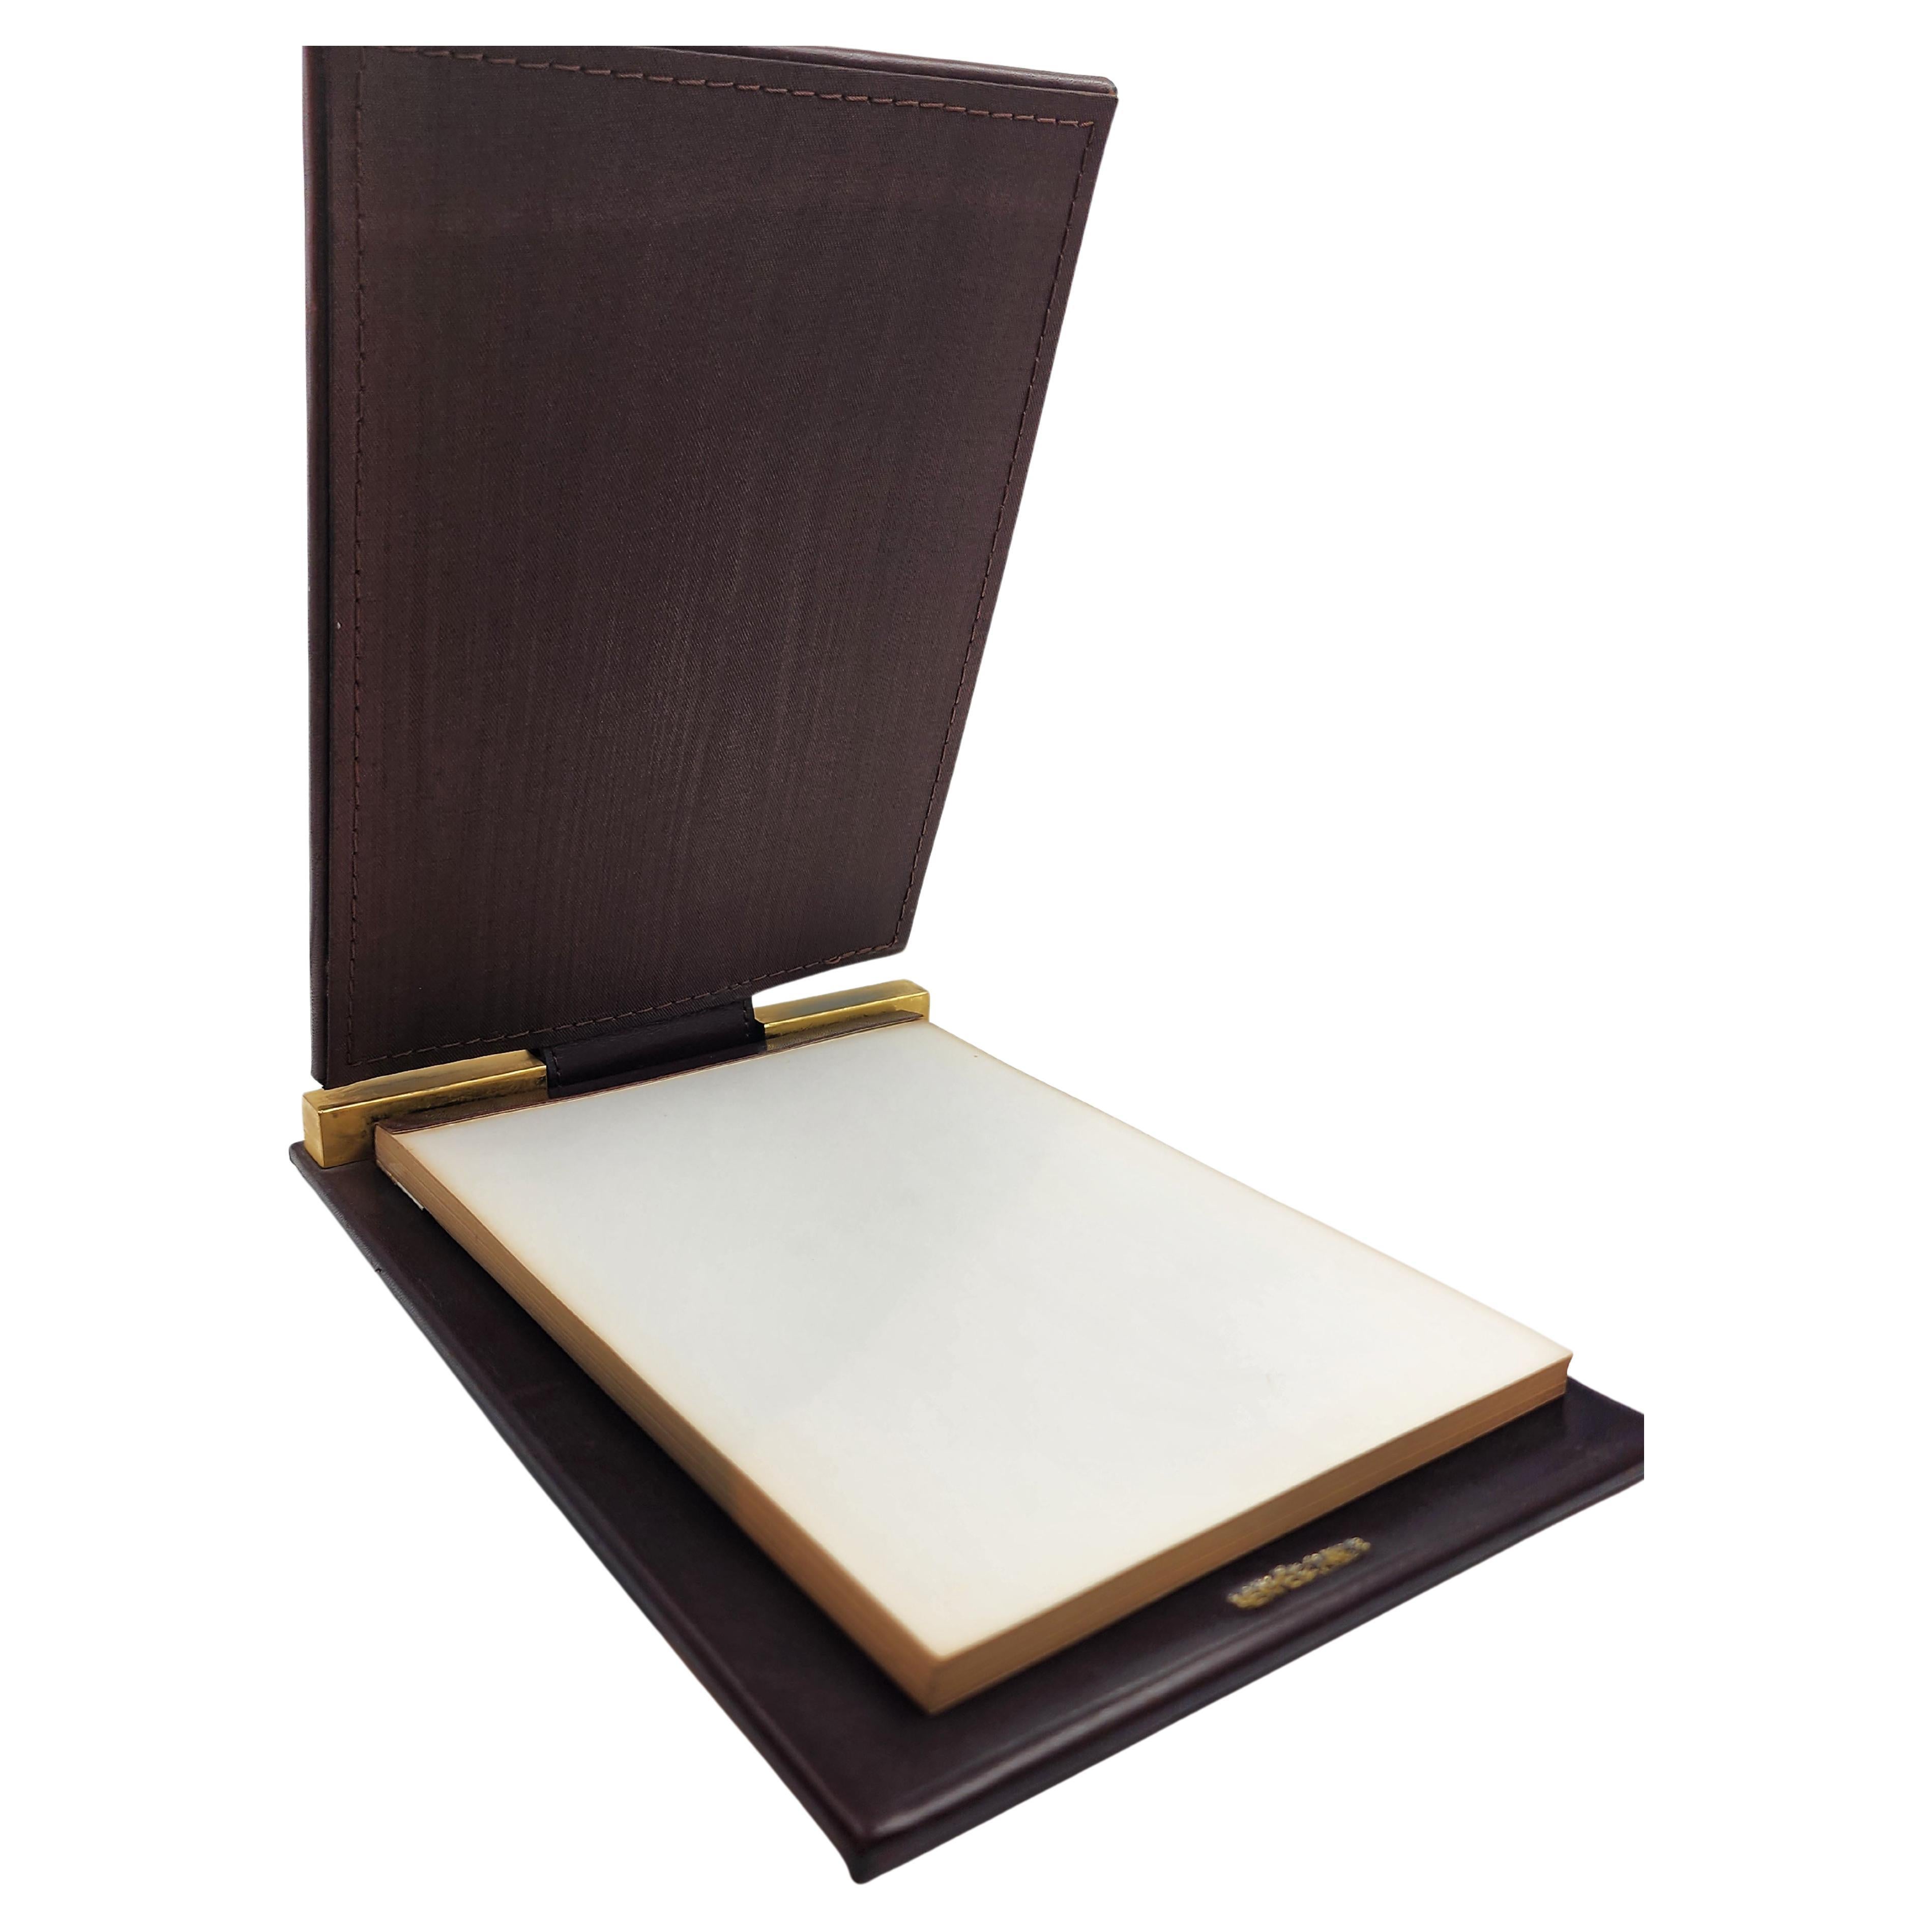 Hermes Paris leather notepad, desk accessory